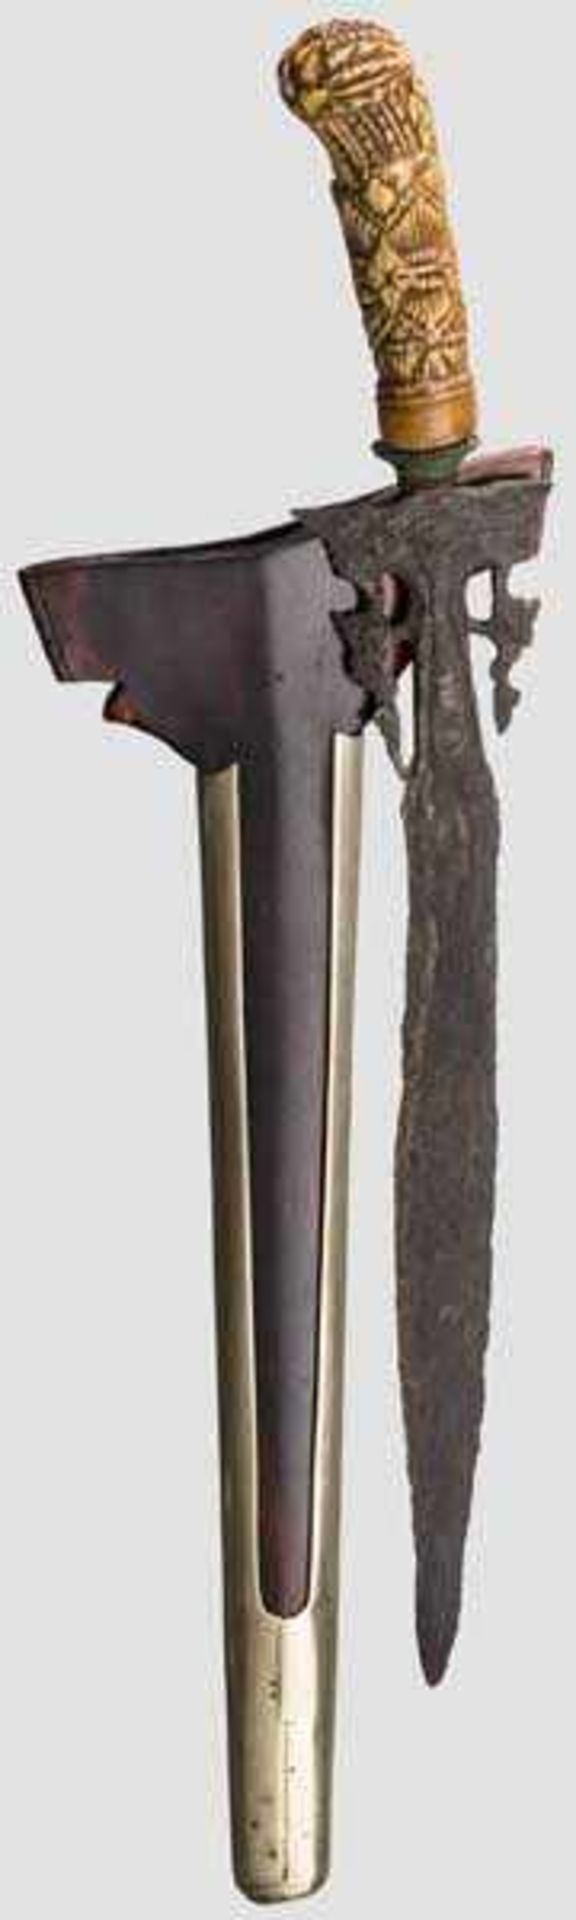 Kris, Java, mit Klinge aus Jenggala um 1300 Zweischneidige Pamorklinge mit ornamental durchbrochen